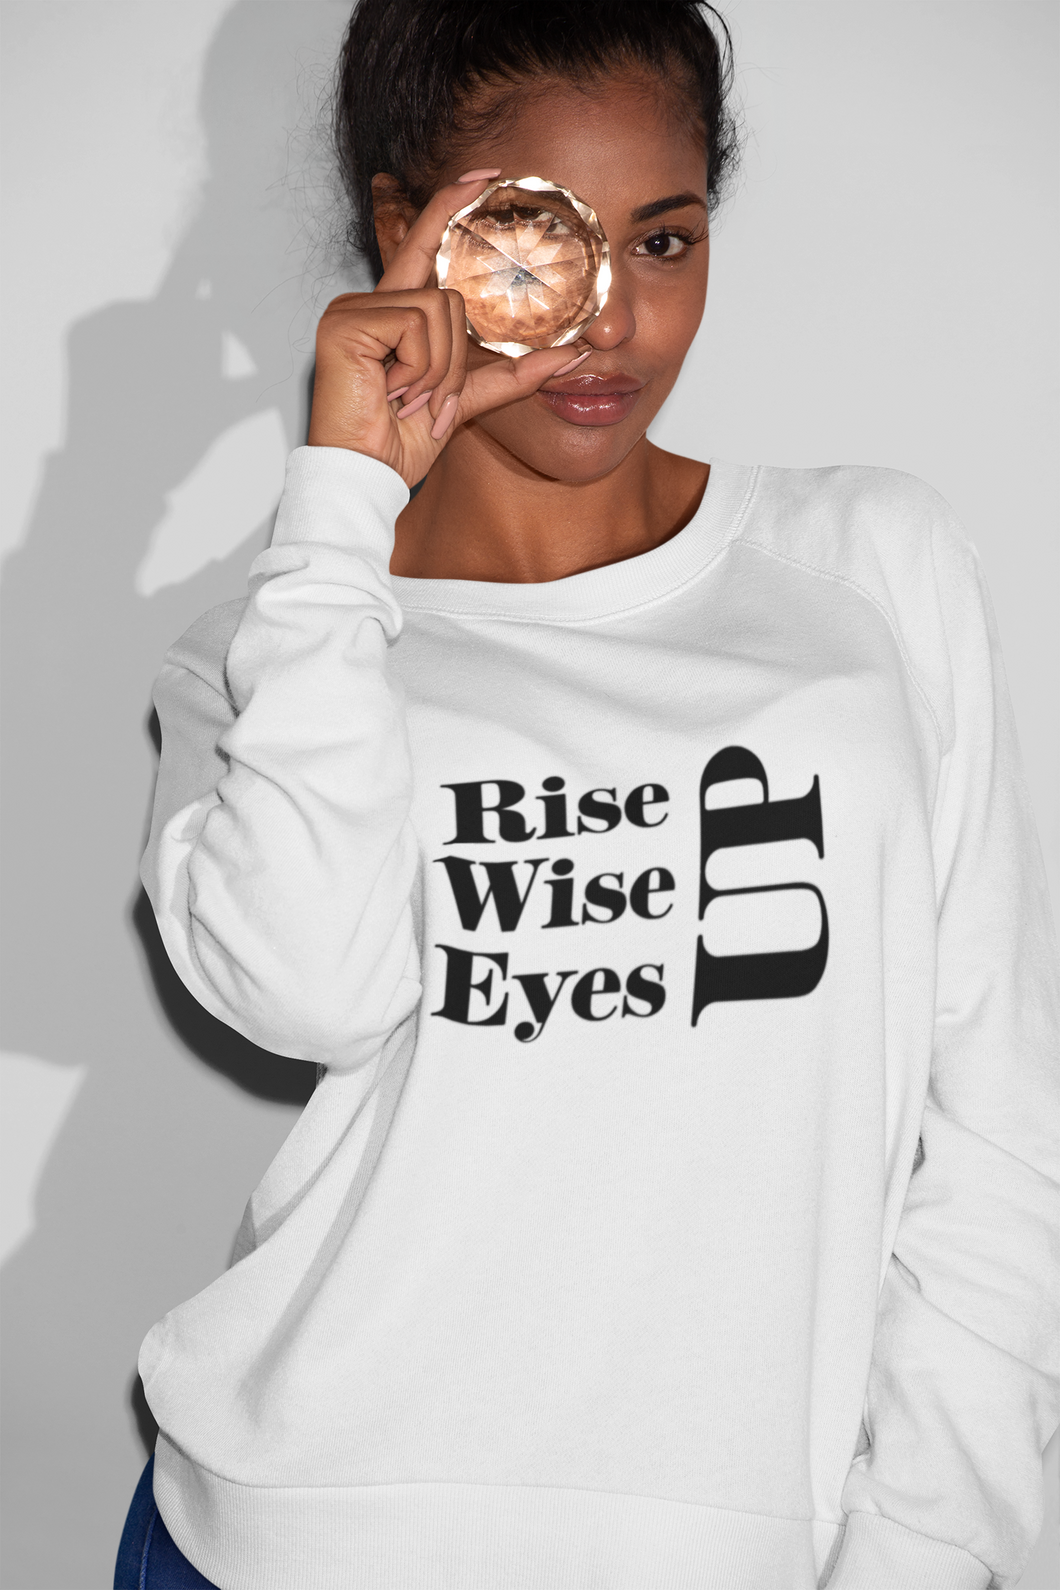 Rise Up, Wise Up Eyes Up Crewneck Sweatshirt